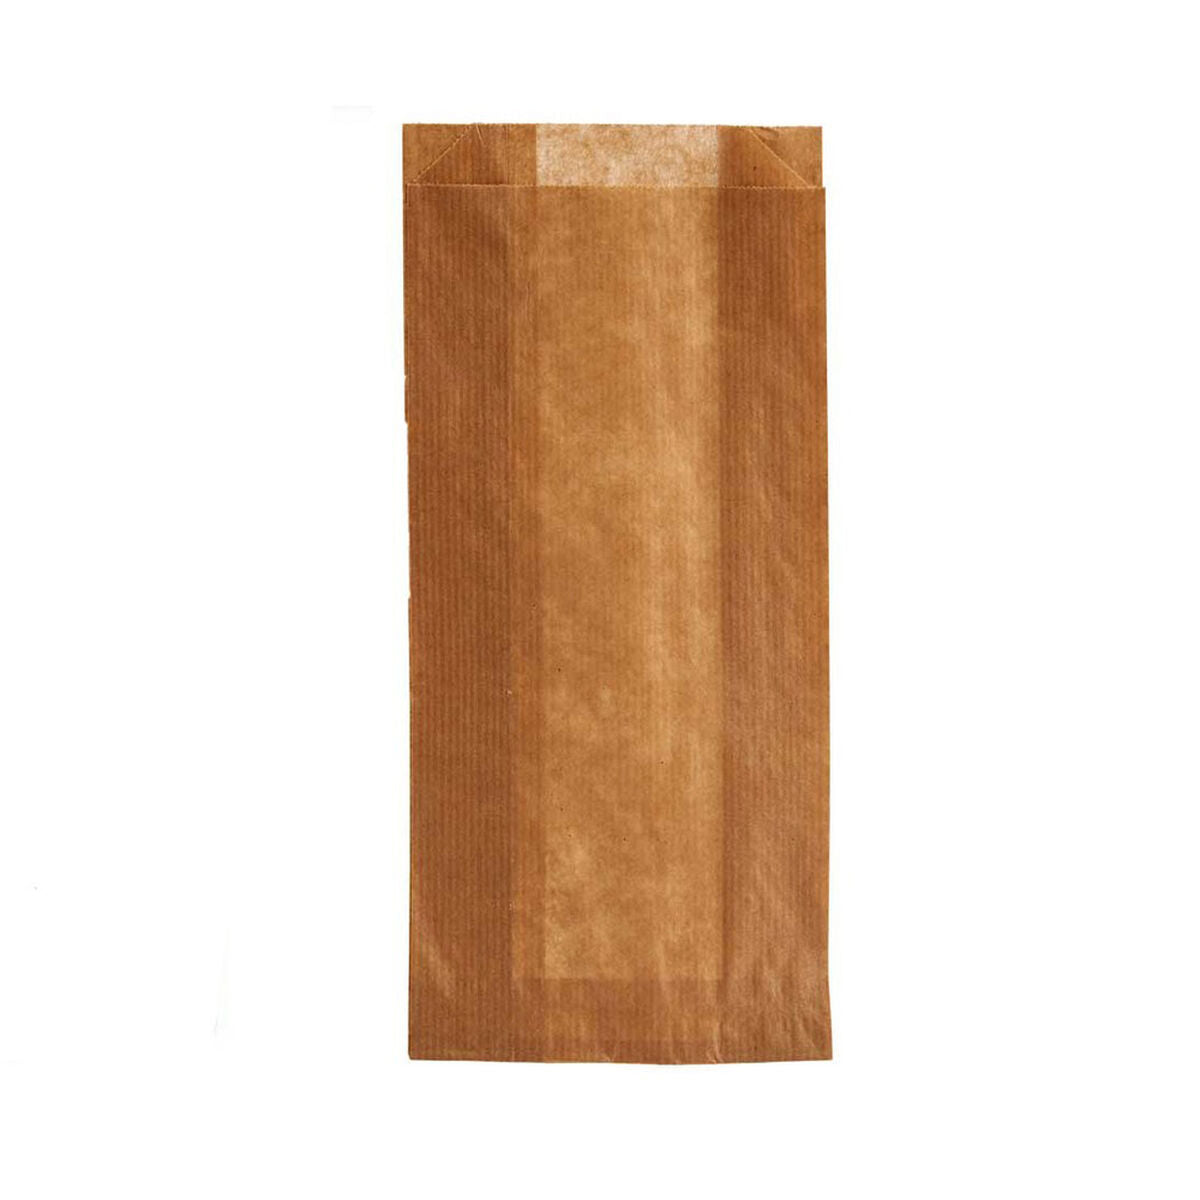 Beschermende voedselverpakking Tas Cellulosa (20 pcs)